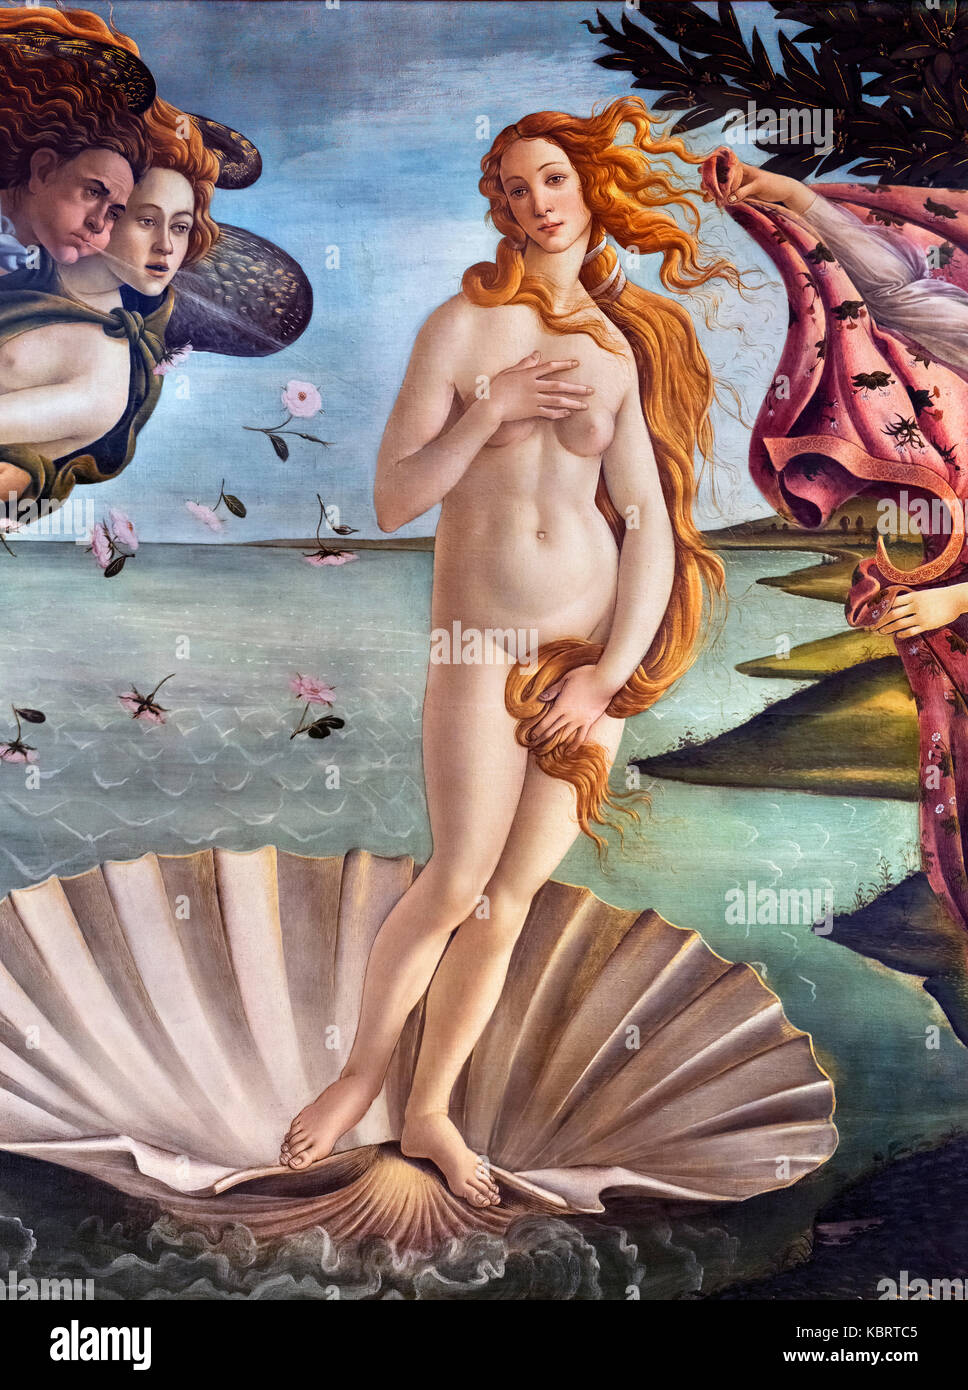 Détail de la naissance de Vénus par l'artiste de la Renaissance, Sandro Botticelli (Alessandro di Mariano di Vanni Filipepi, c.1445-1510) tempera sur toile, c.1487 Banque D'Images